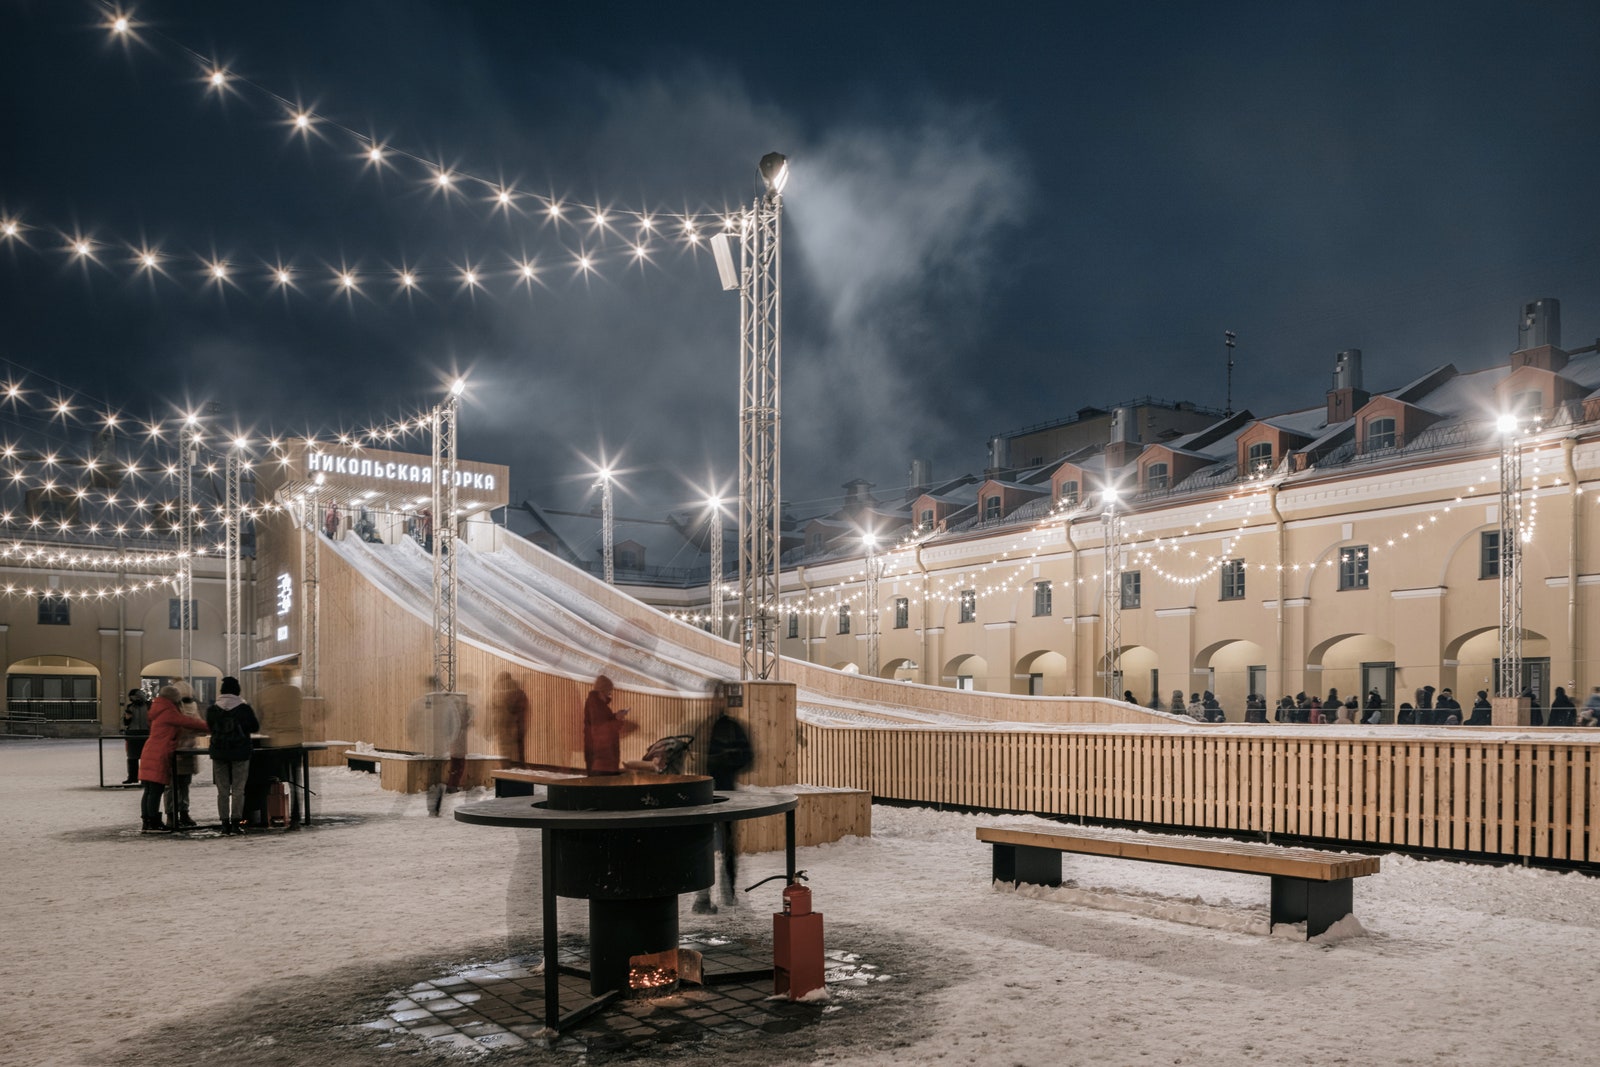 “Зима в Никольских рядах” в центре СанктПетербурга